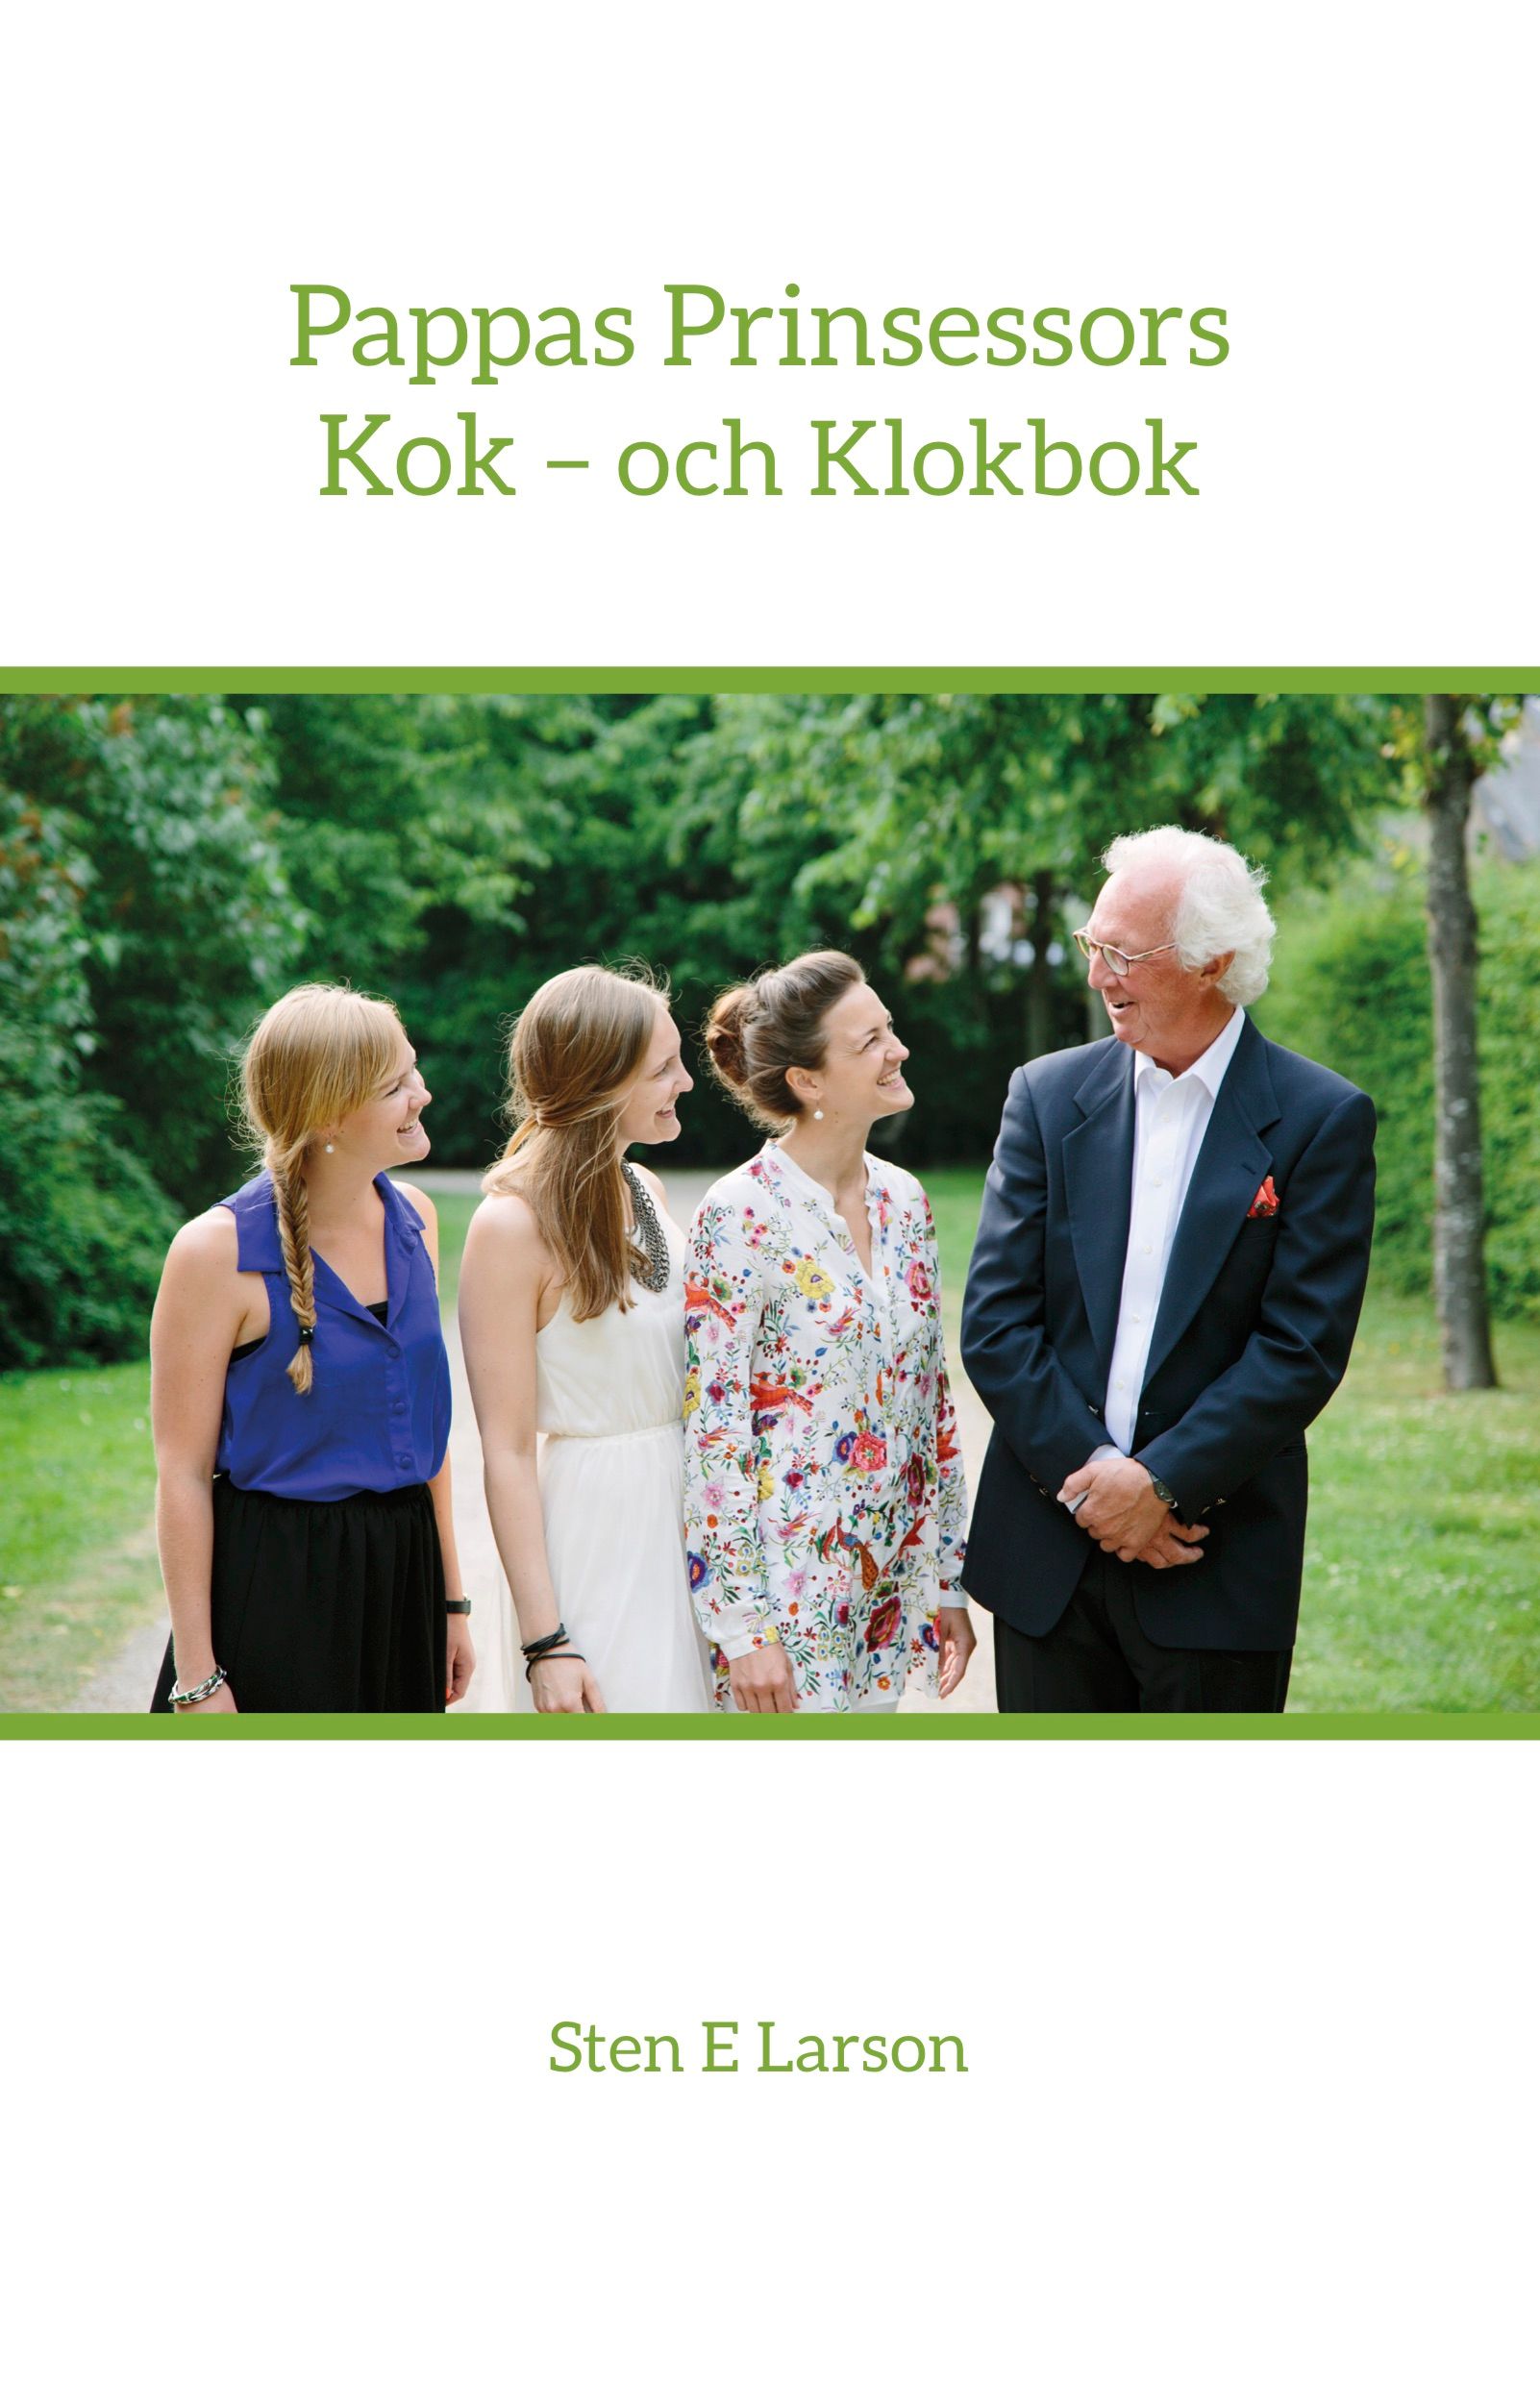 Pappas Prinsessors Kok - och Klokbok, e-bog af Sten E Larson